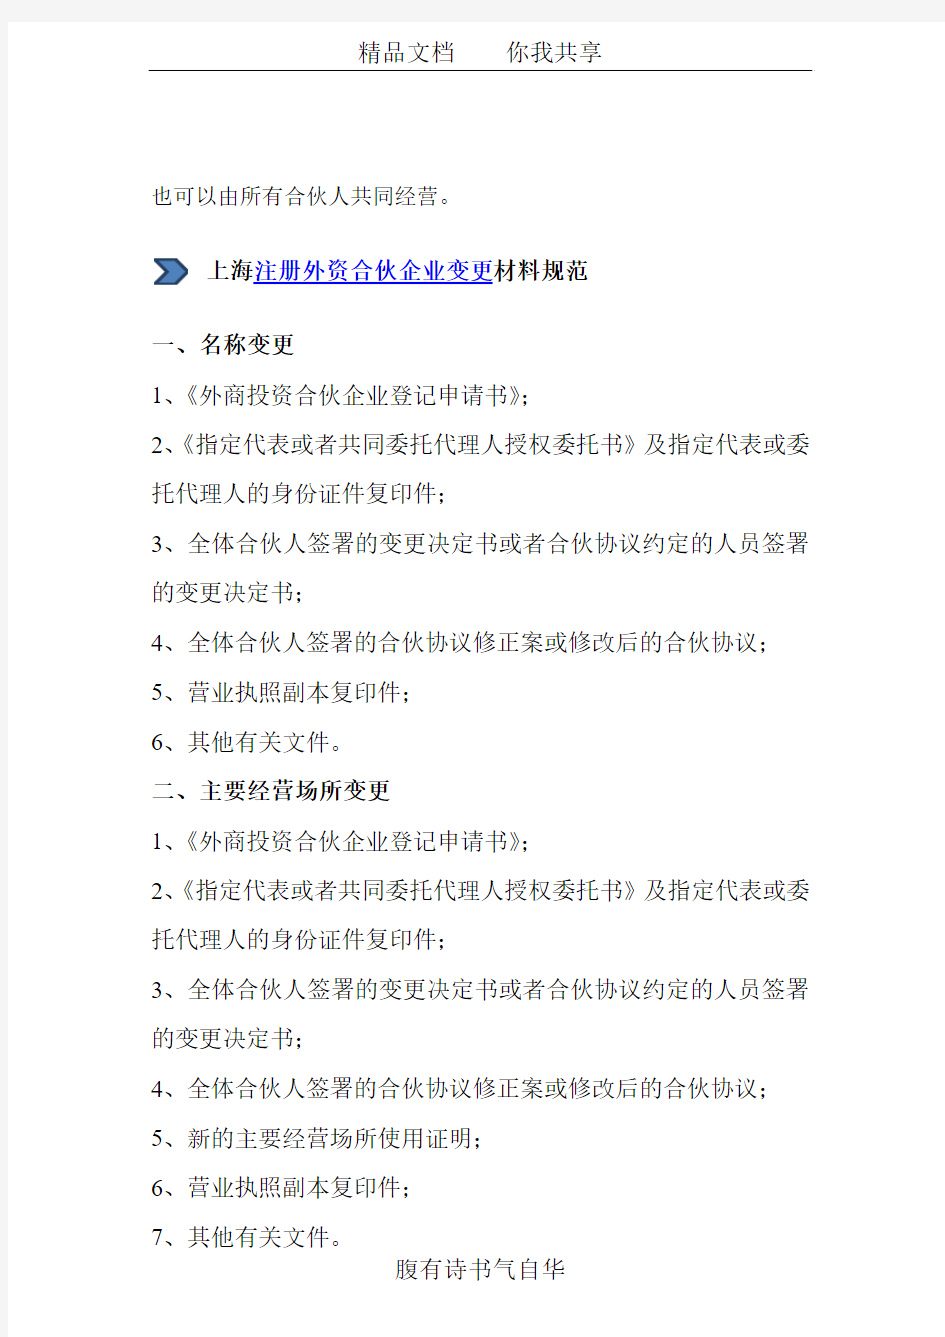 上海自贸区外资合伙企业变更登记办理流程及文件清单